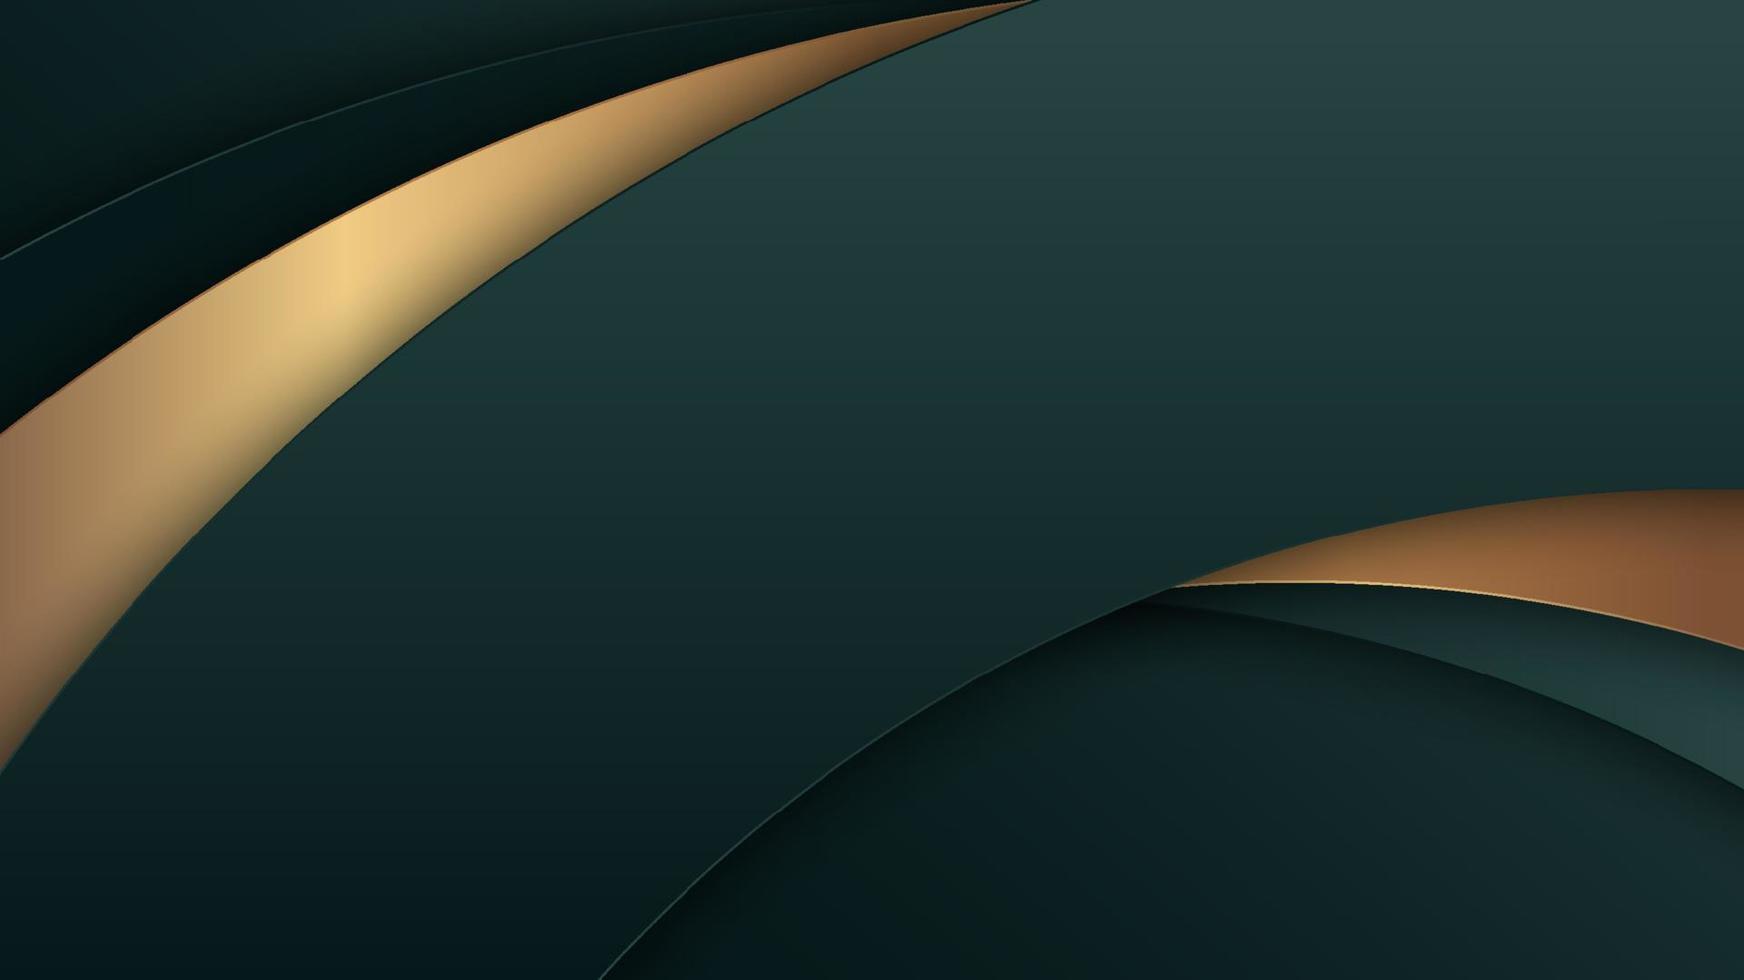 abstracte 3d luxe stijl groene en gouden gebogen strepen overlappende lagen op donkergroene achtergrond luxe stijl vector